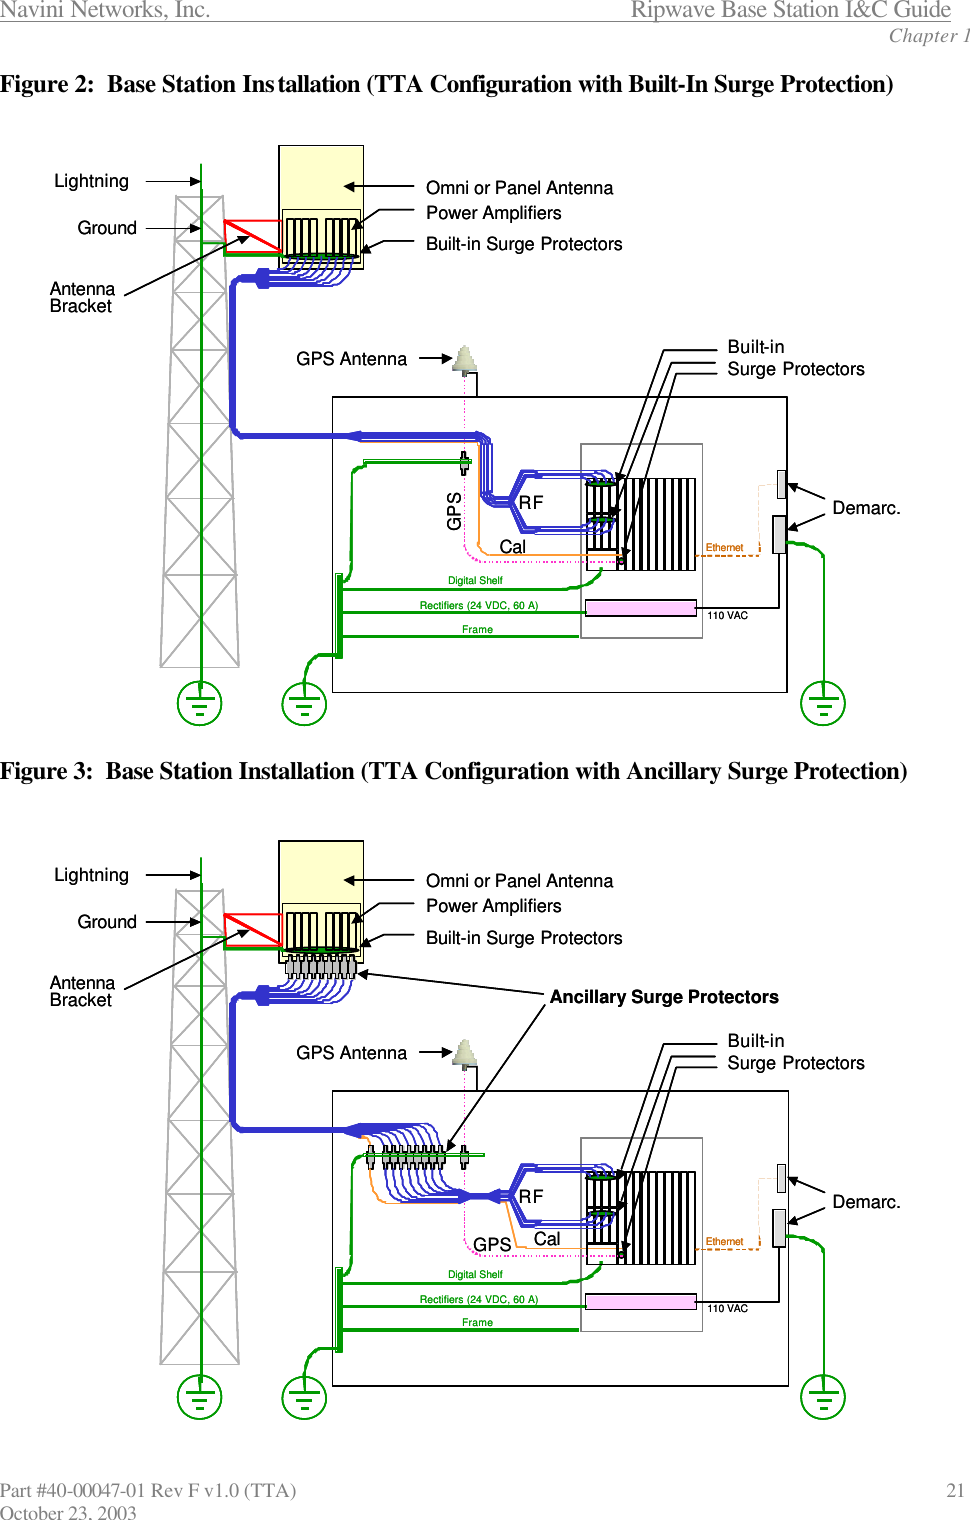 Navini Networks, Inc.                      Ripwave Base Station I&amp;C Guide Chapter 1 Part #40-00047-01 Rev F v1.0 (TTA)                               21 October 23, 2003 Figure 2:  Base Station Installation (TTA Configuration with Built-In Surge Protection)  Figure 3:  Base Station Installation (TTA Configuration with Ancillary Surge Protection) Power AmplifiersBuilt-in Surge ProtectorsOmni or Panel AntennaLightningGroundBuilt-inSurge ProtectorsGPS AntennaDigital ShelfRectifiers (24 VDC, 60 A)FrameRFCal GPS AntennaBracketEthernet110 VACDemarc.Power AmplifiersBuilt-in Surge ProtectorsOmni or Panel AntennaLightningGroundBuilt-inSurge ProtectorsGPS AntennaDigital ShelfRectifiers (24 VDC, 60 A)FrameRFCal GPS AntennaBracketEthernet110 VACDemarc.Omni or Panel AntennaPower AmplifiersBuilt-in Surge ProtectorsLightningGroundRFCal Digital ShelfRectifiers (24 VDC, 60 A)FrameGPS AntennaBracketGPS Antenna Built-inSurge ProtectorsEthernet110 VACDemarc.Ancillary Surge ProtectorsOmni or Panel AntennaPower AmplifiersBuilt-in Surge ProtectorsLightningGroundRFCal Digital ShelfRectifiers (24 VDC, 60 A)FrameGPS AntennaBracketGPS Antenna Built-inSurge ProtectorsEthernet110 VACDemarc.Ancillary Surge Protectors